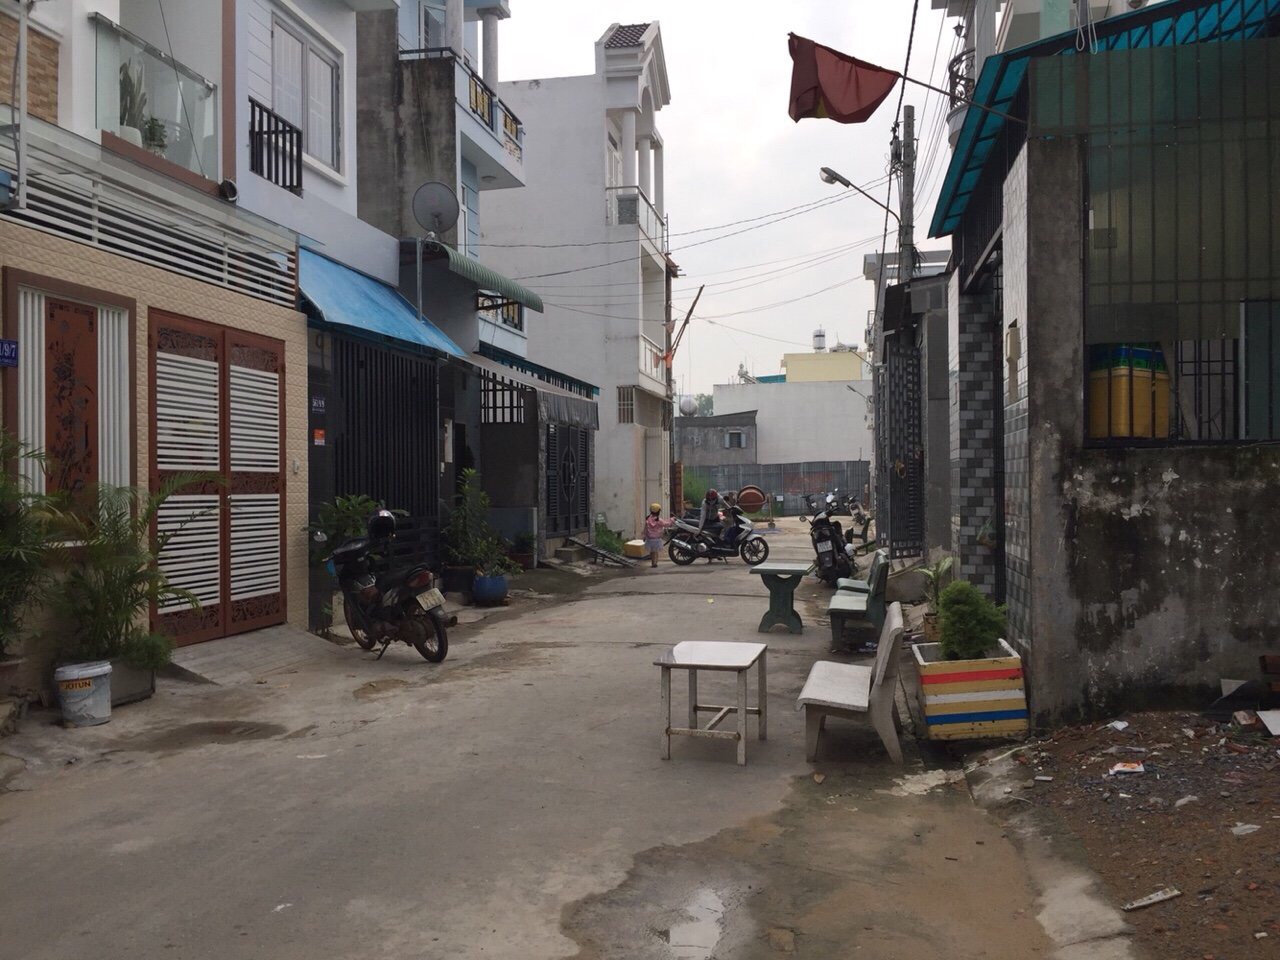 Bán nhà Dương Thị Giang, Phan Văn Hớn, Q12 gần cầu Tham Lương, 1,54 tỷ/ 4x12,8m, LH: 0938704502